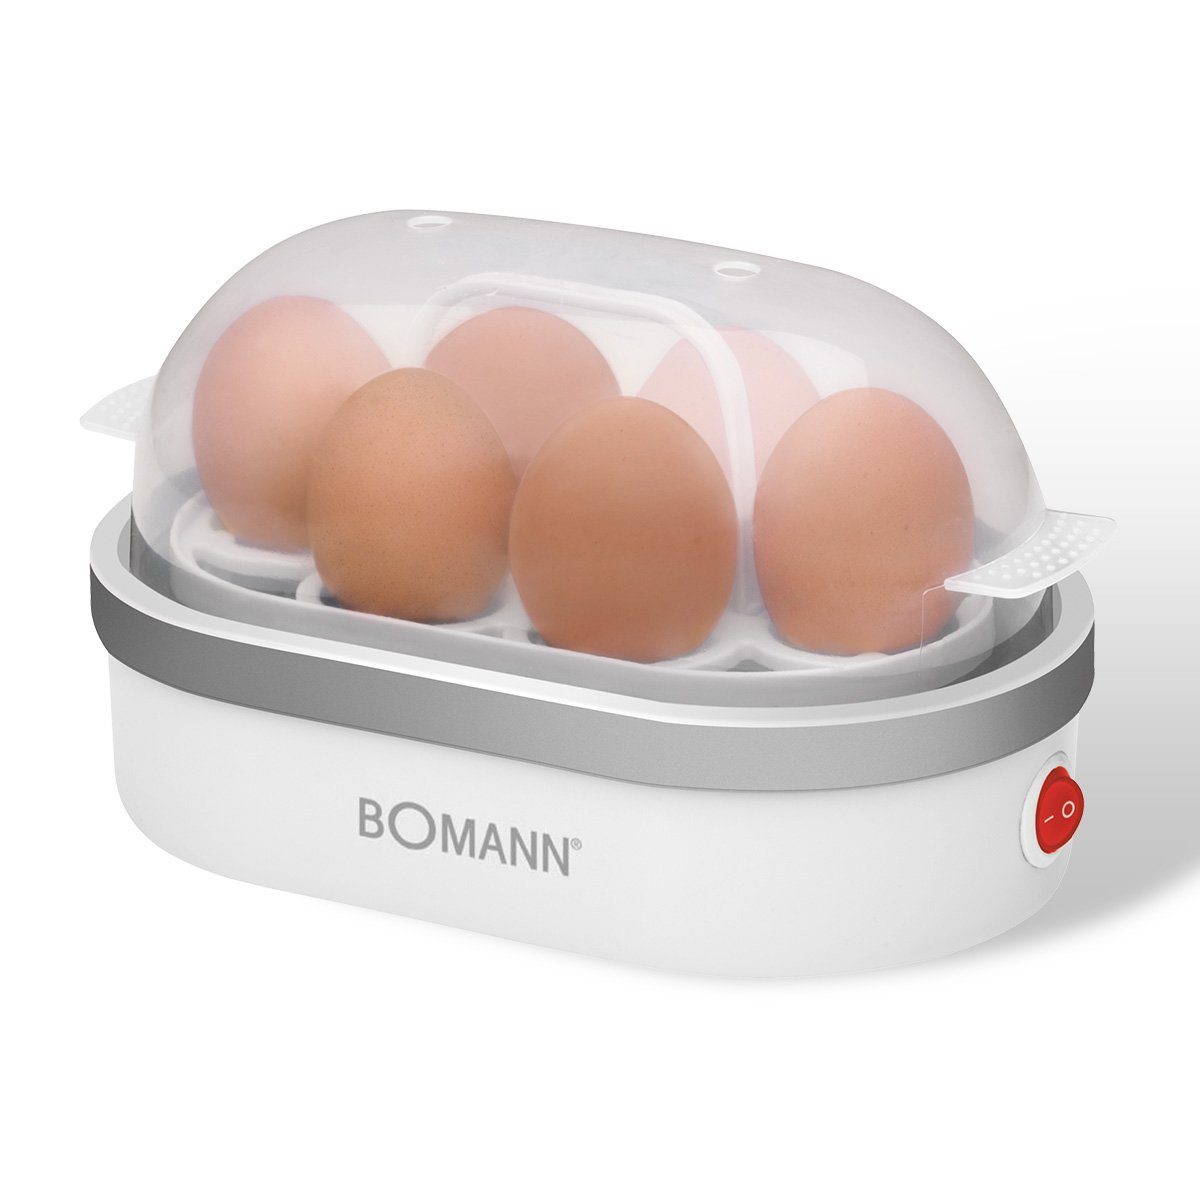 BOMANN Eierkocher EK 5022 CB, Eierkocher mit Summer für bis zu 6 Eiern, 400W